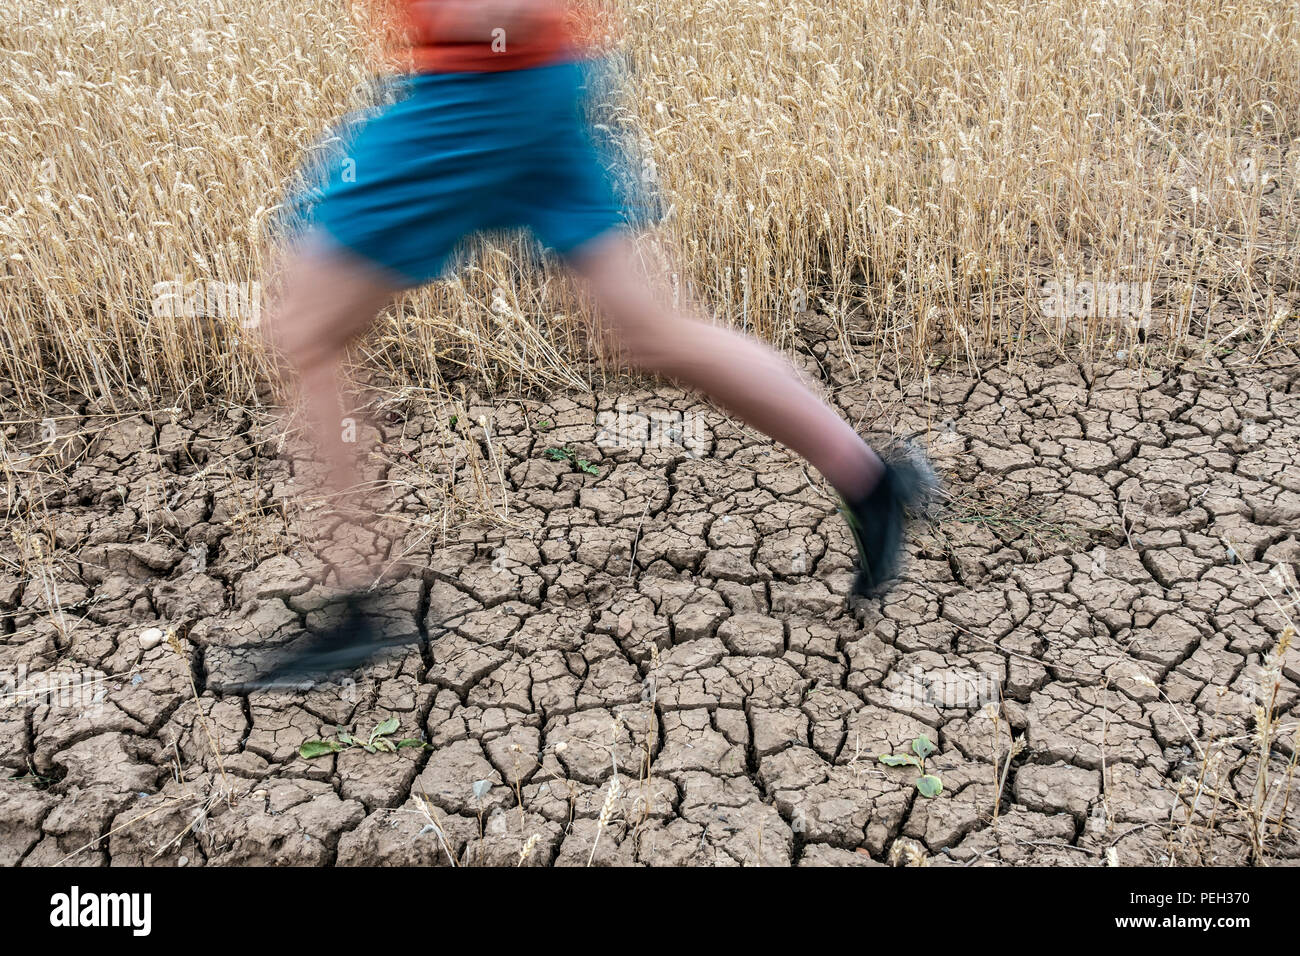 Mann laufen über Rissige Erde während der Dürre. UK. Klimawandel, globale Erwärmung Konzept. Stockfoto